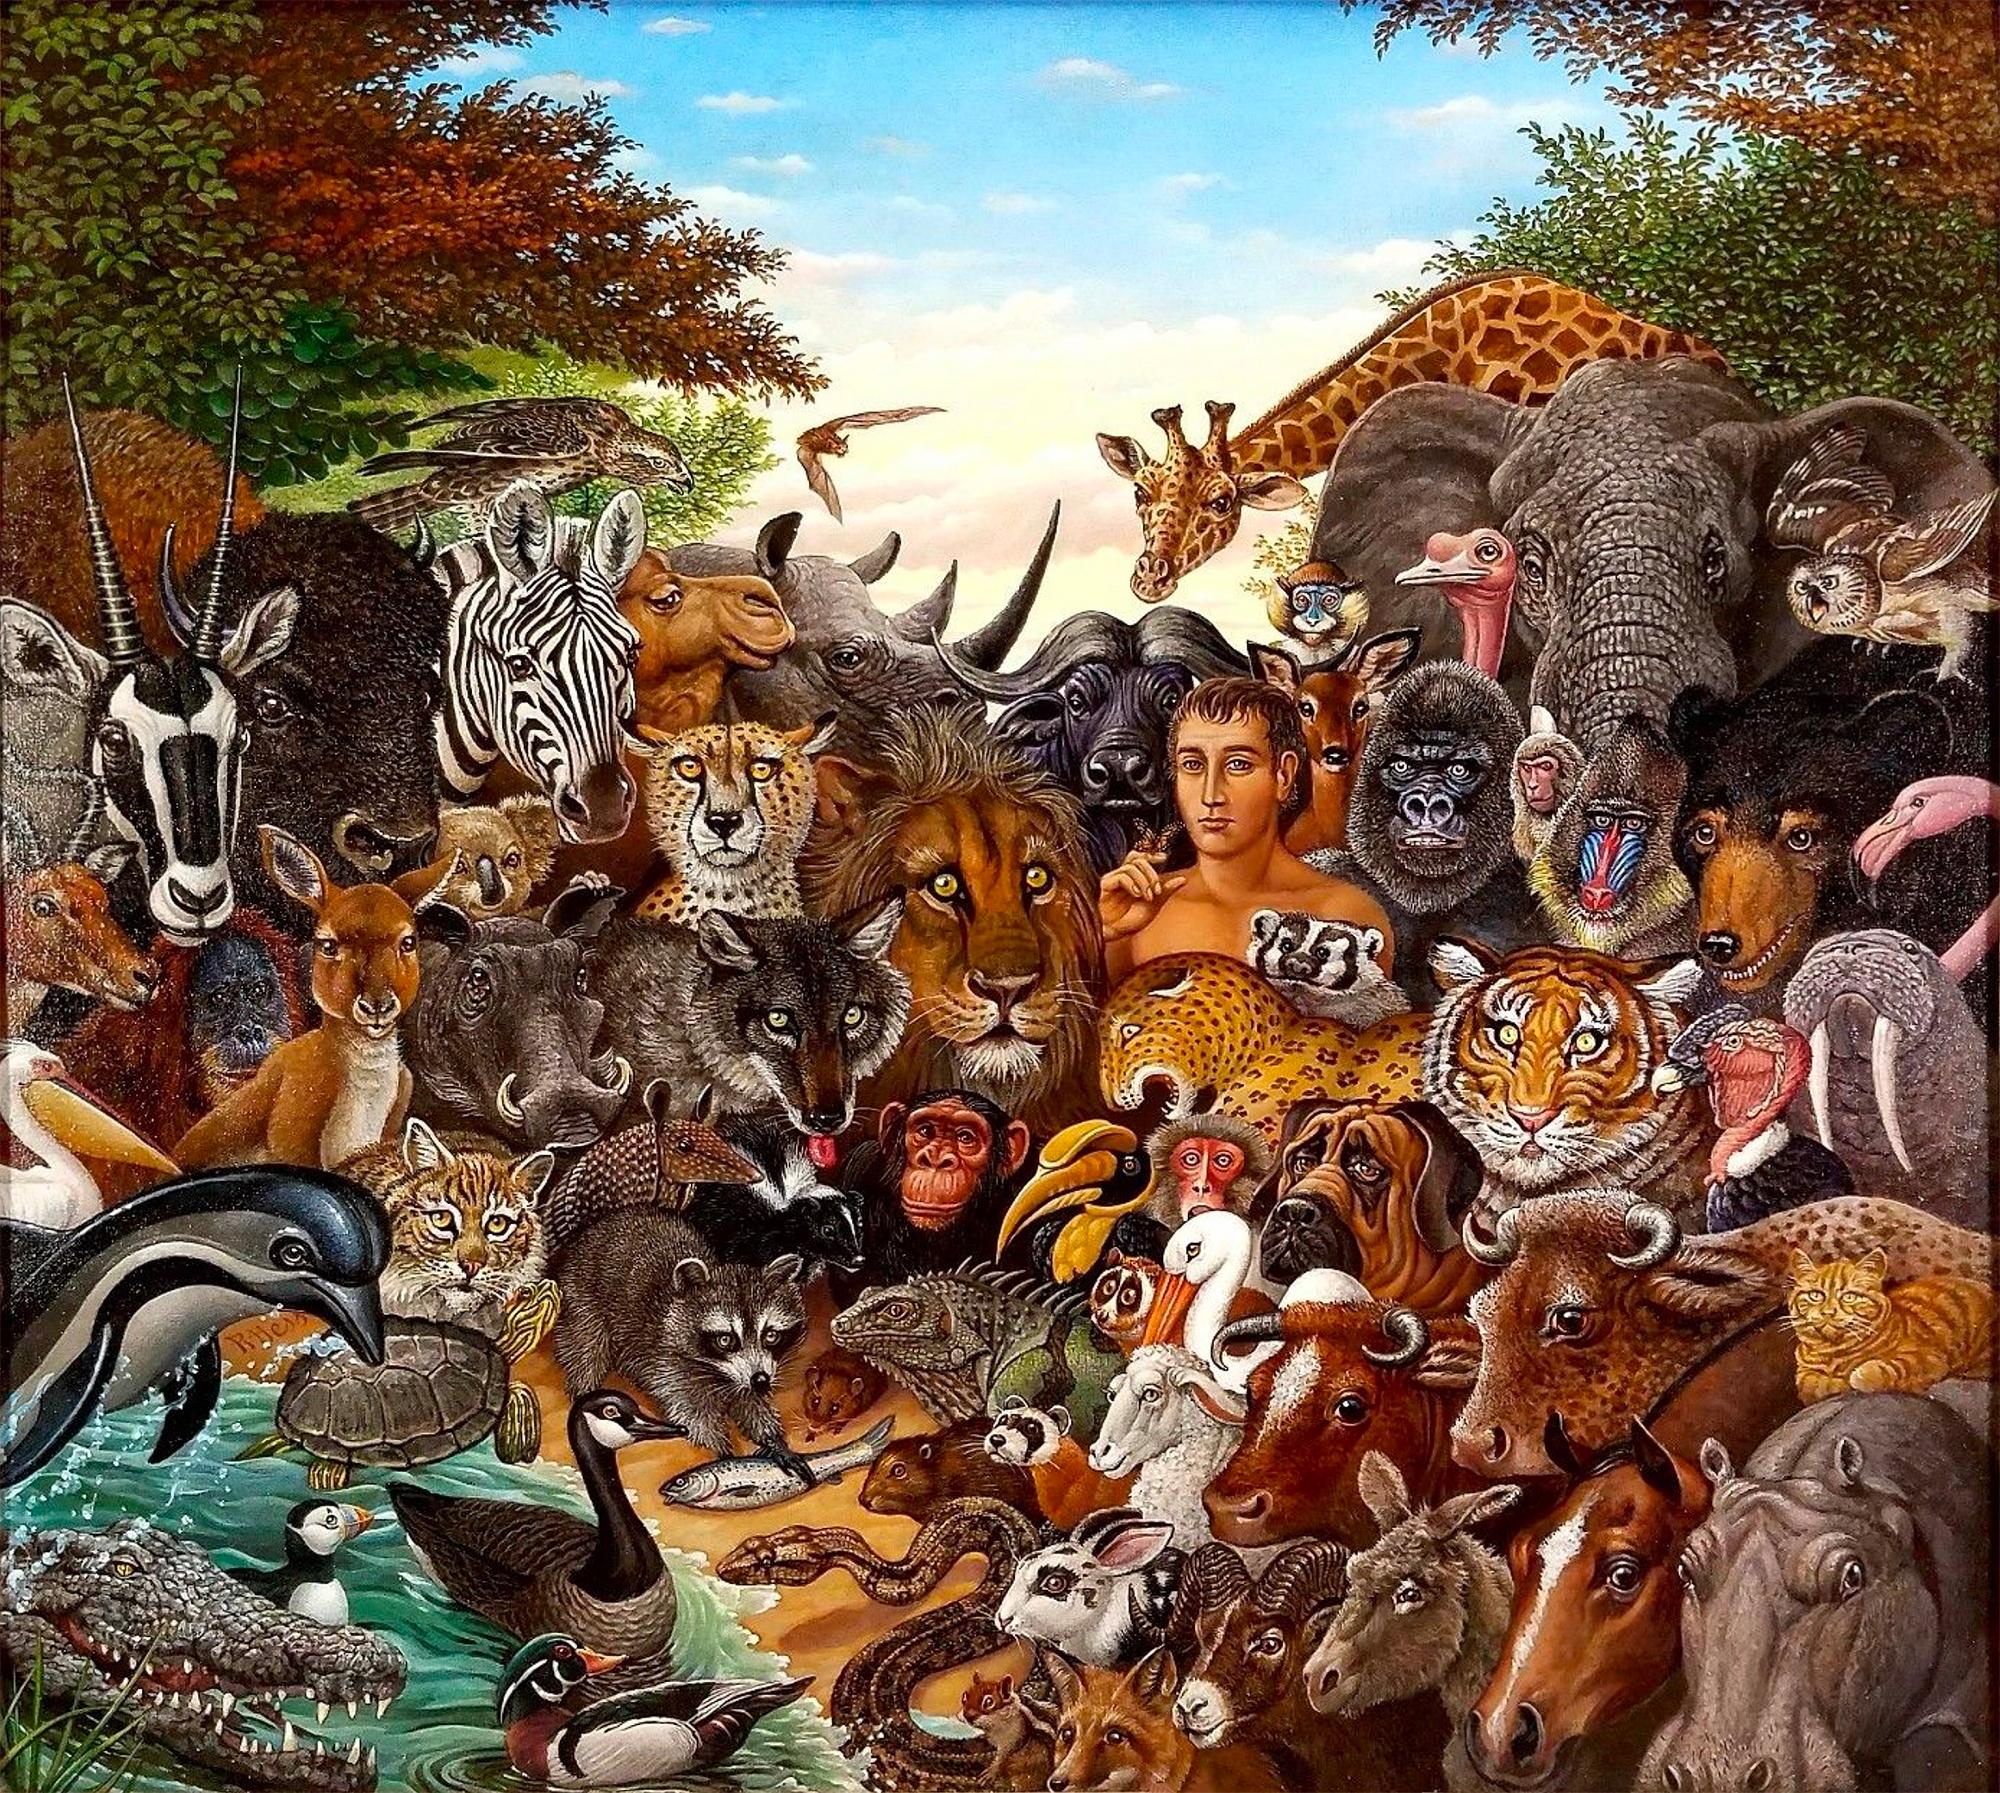 Kingdom Animal Kingdom, Zebra, Buffalo, Lion, Giraffe, Elephant, Monkey, Tiger,  Gorille